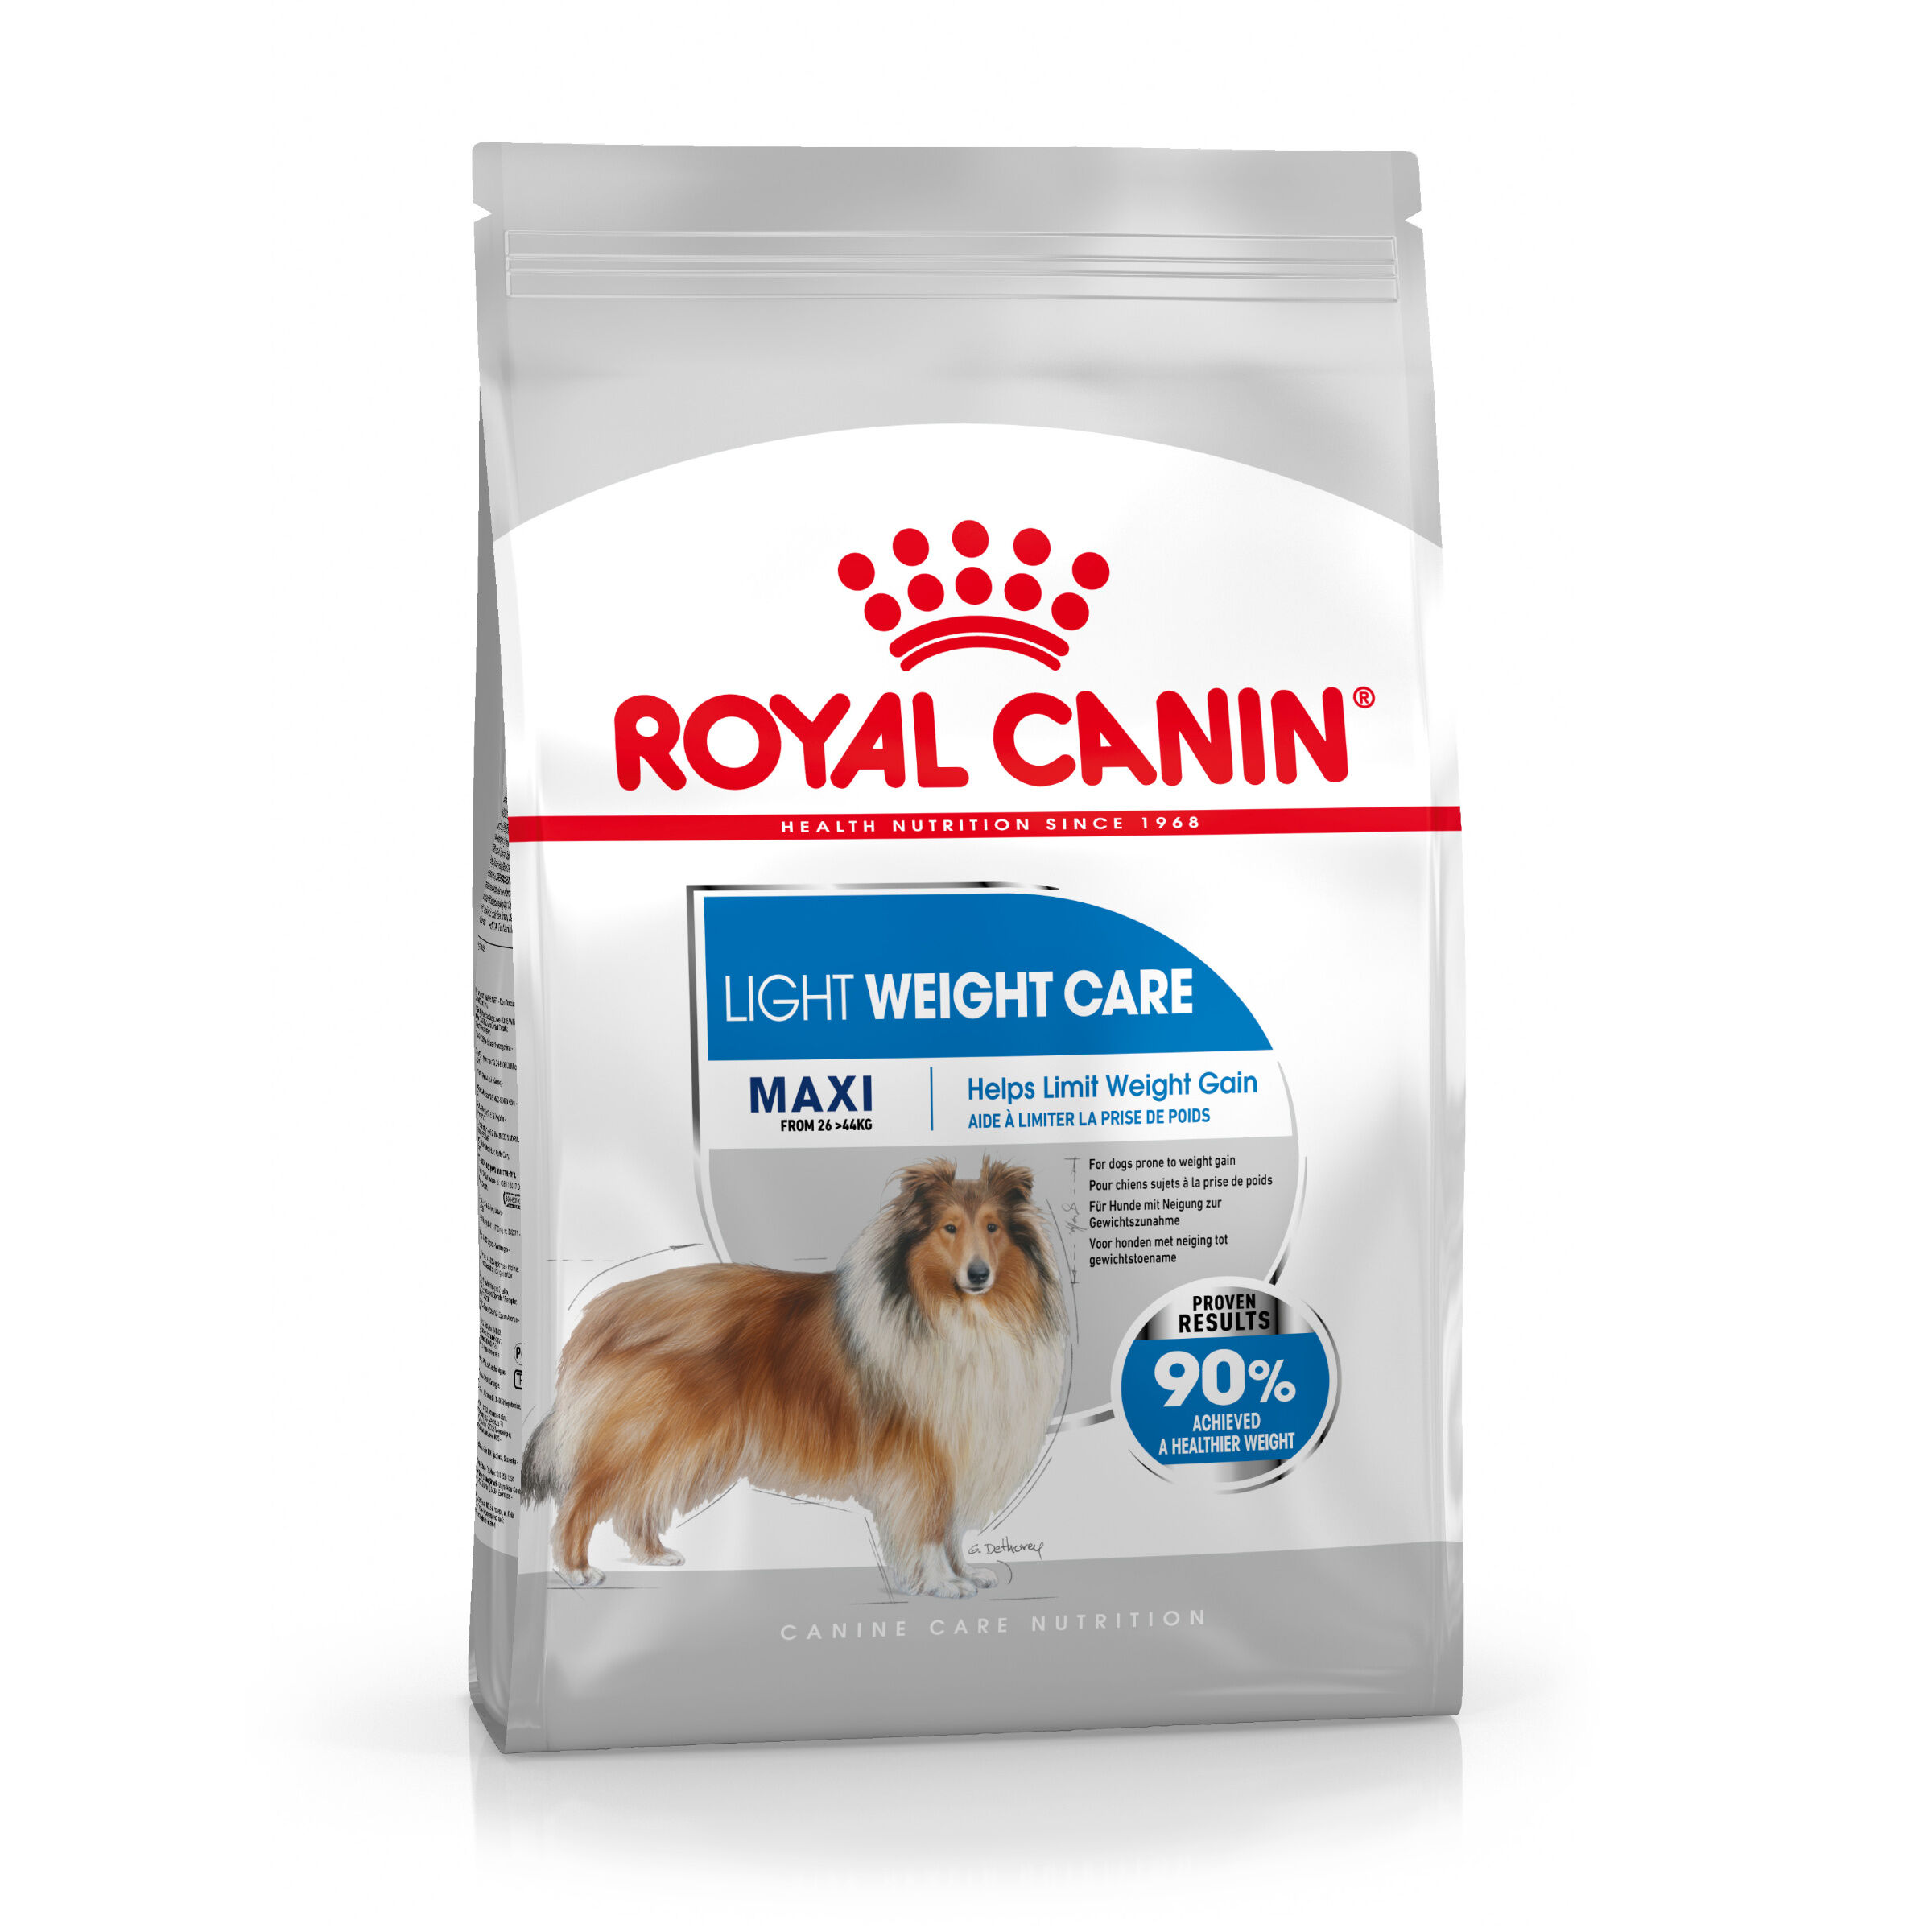 Royal Canin 2x12kg Maxi Adult Light Royal Canin pienso para perros